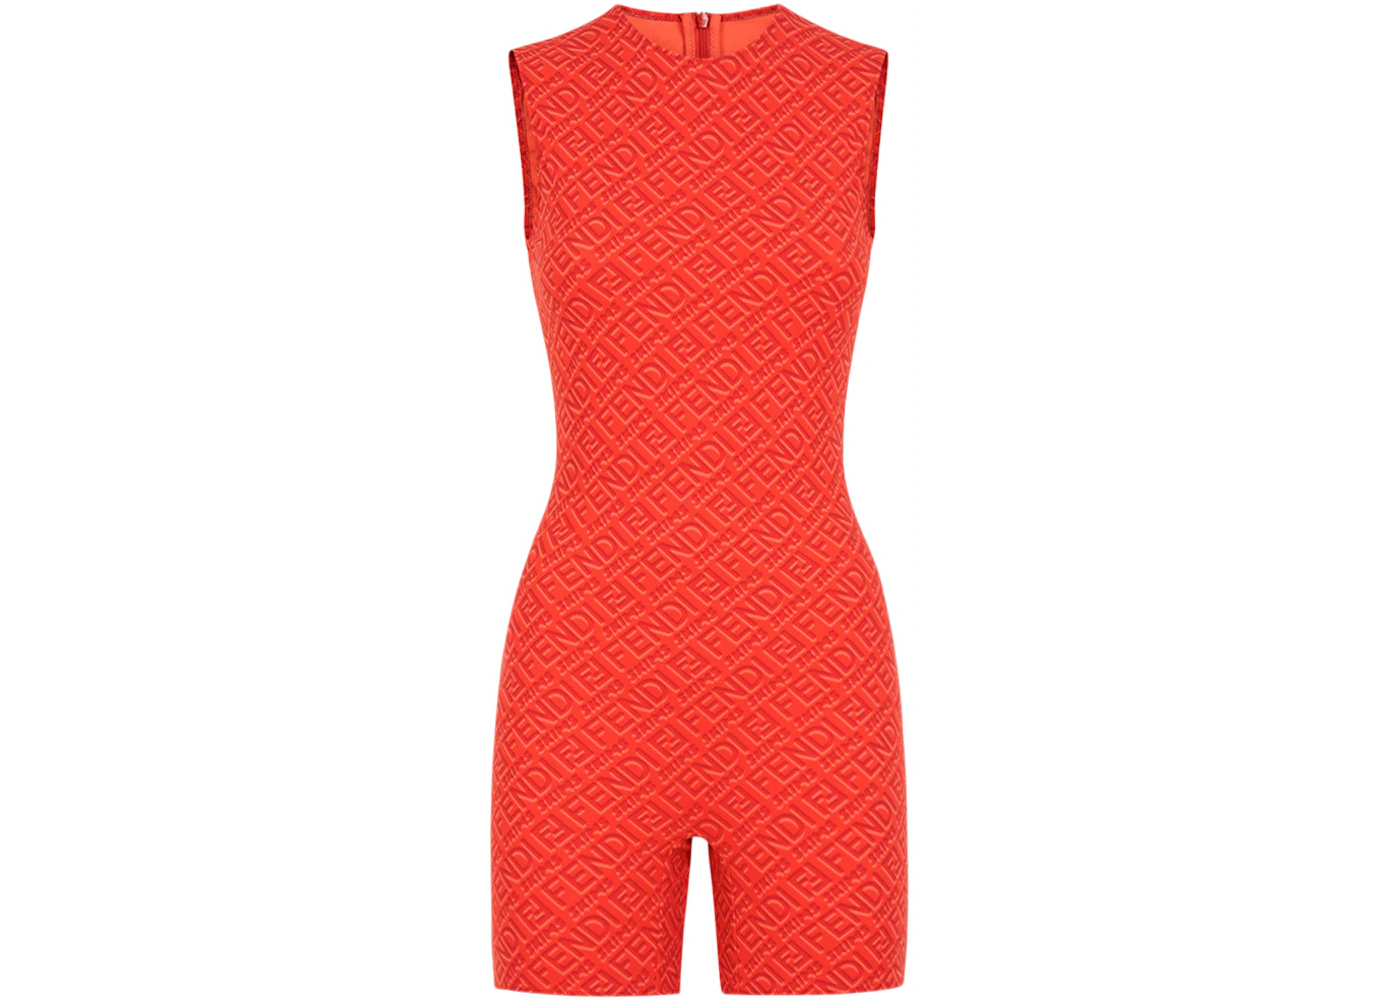 Fendi x Skims Mock Neck Long Sleeve Bodysuit - Red Tops, Clothing -  FENSK21085